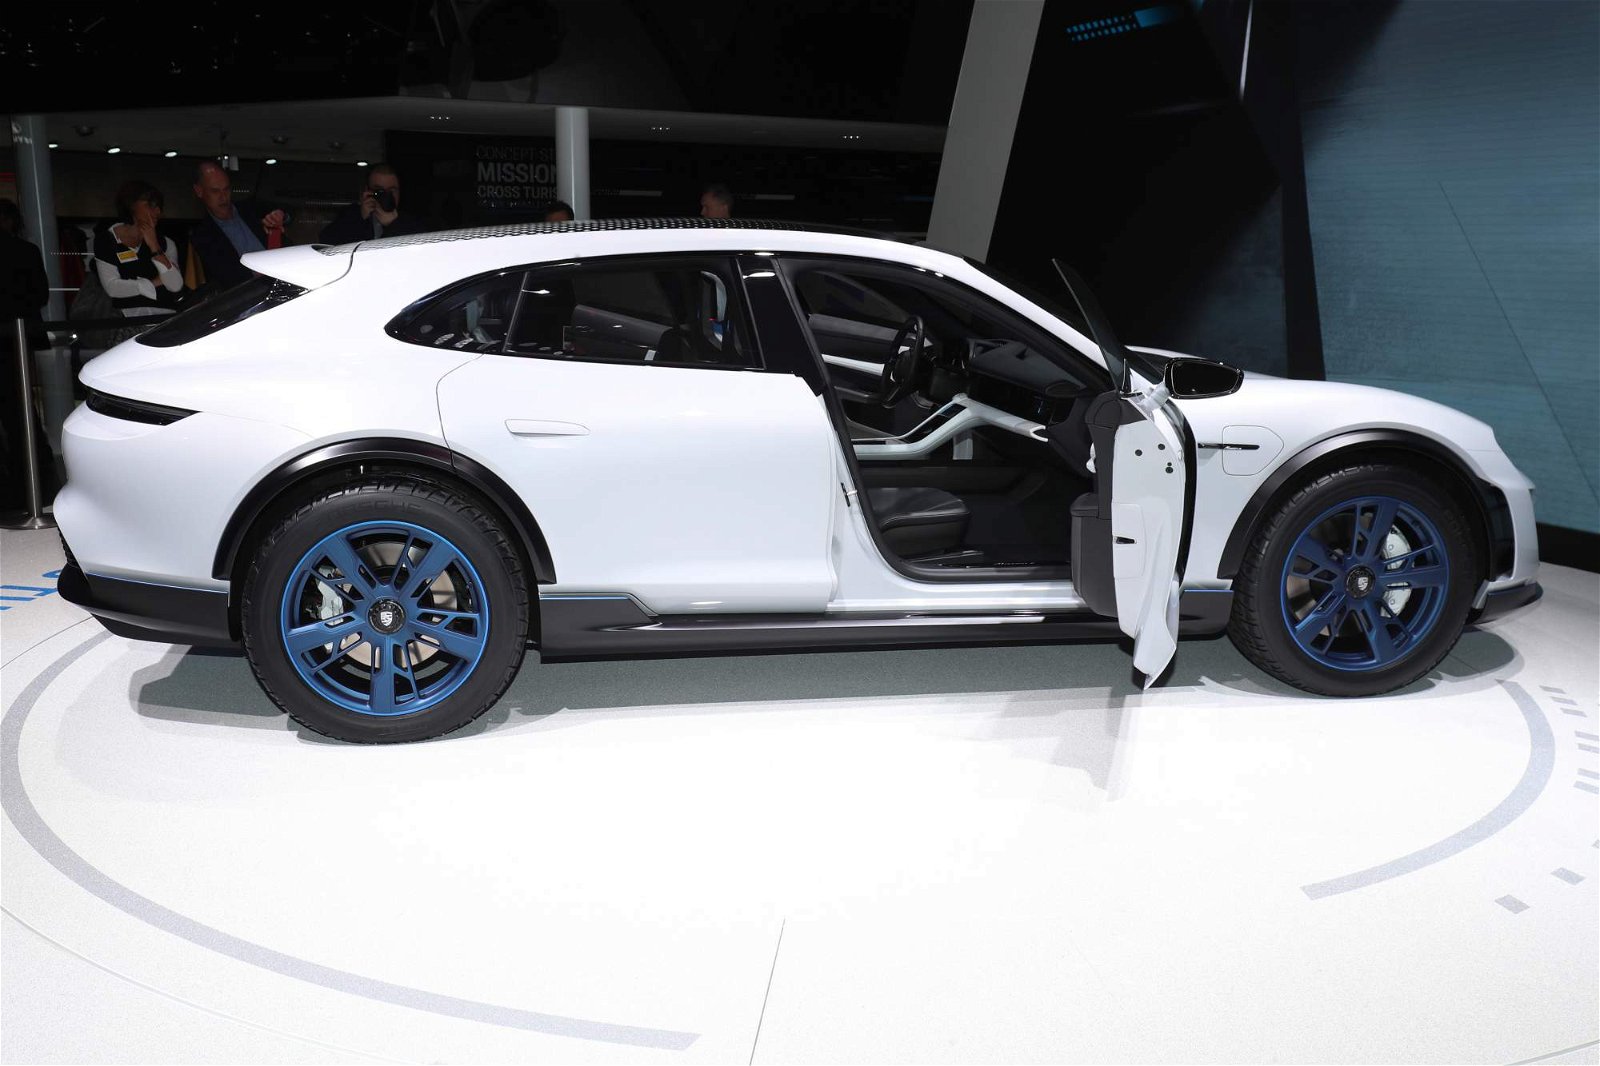 Porsche-Mission-E-Cross-Turismo-Concept-at-Geneva-Motor-Show-14